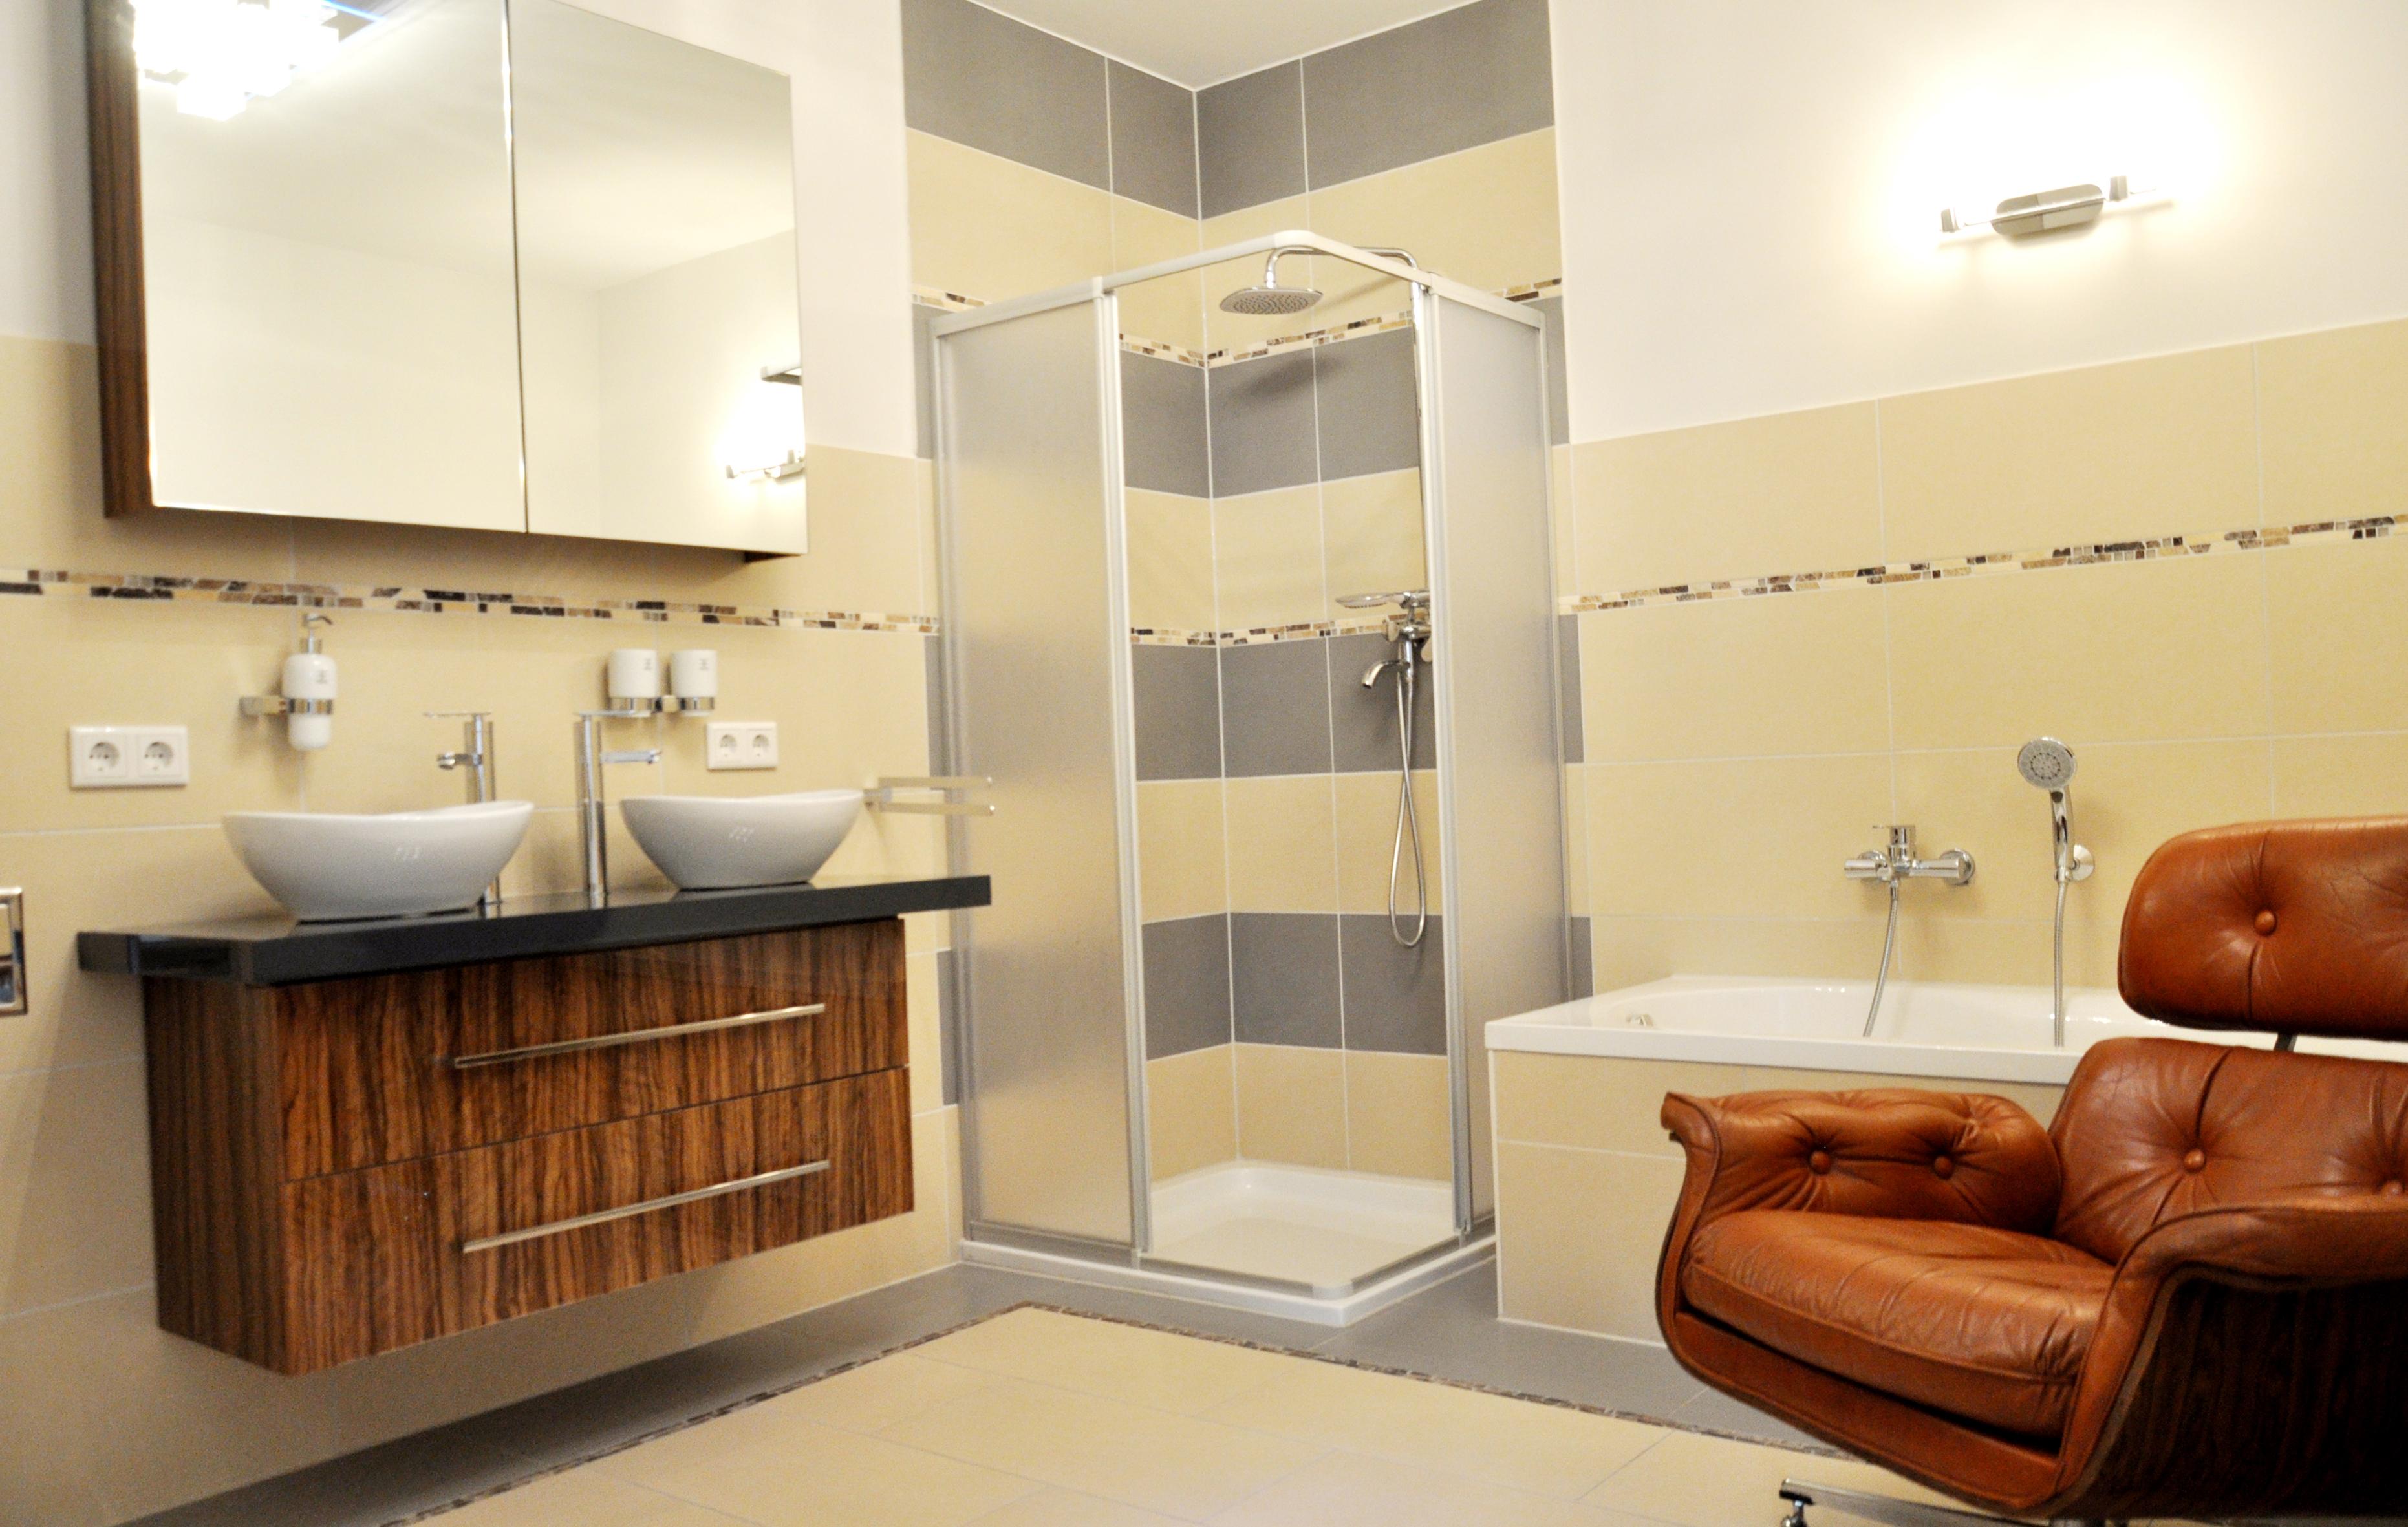 Bad im behaglichen 60 m2 Apartment zu mieten #bad #badezimmer ©Tatjana Adelt